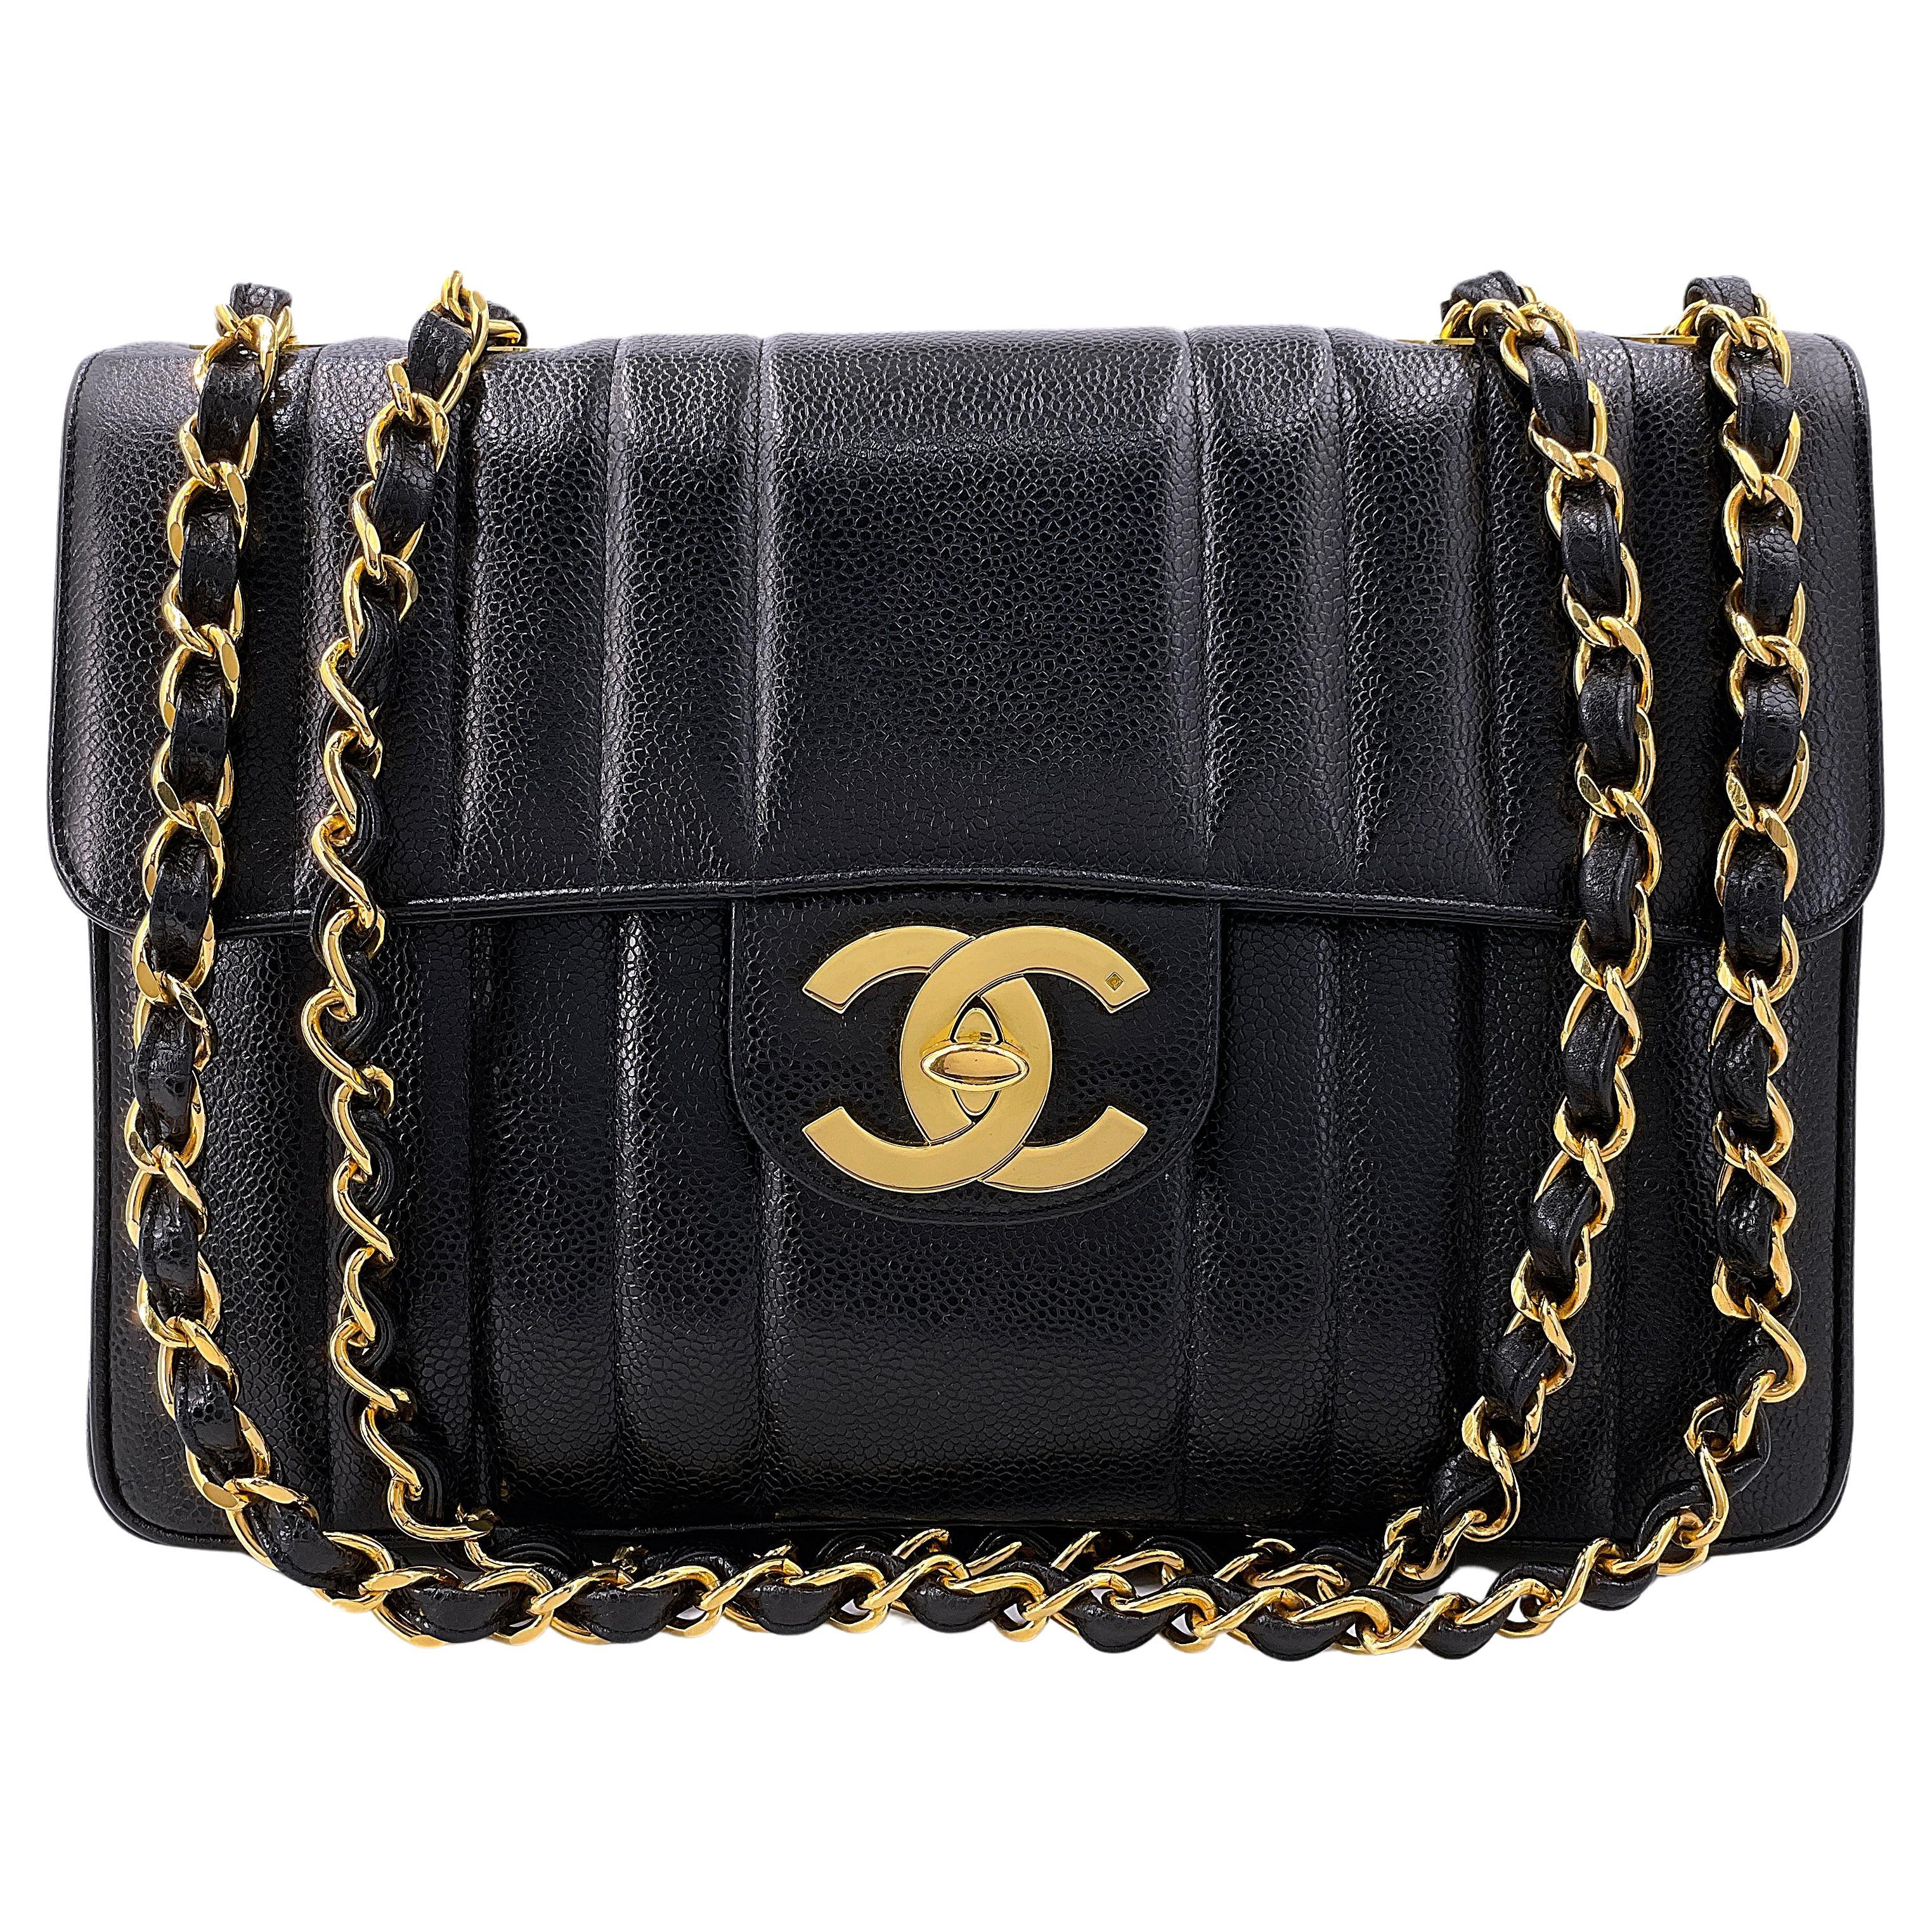 Chanel Vintage Black Caviar Mademoiselle Jumbo Classic Flap